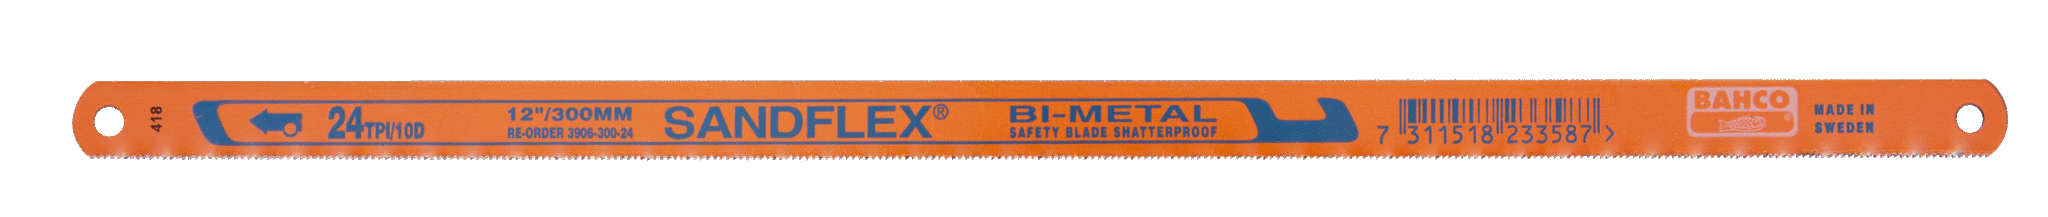 Биметаллические ножовочные полотна SANDFLEX®. Новое биметаллическое полотно SANDFLEX с повышеным содержанием кoбальта BAHCO 3906-250-18-5P